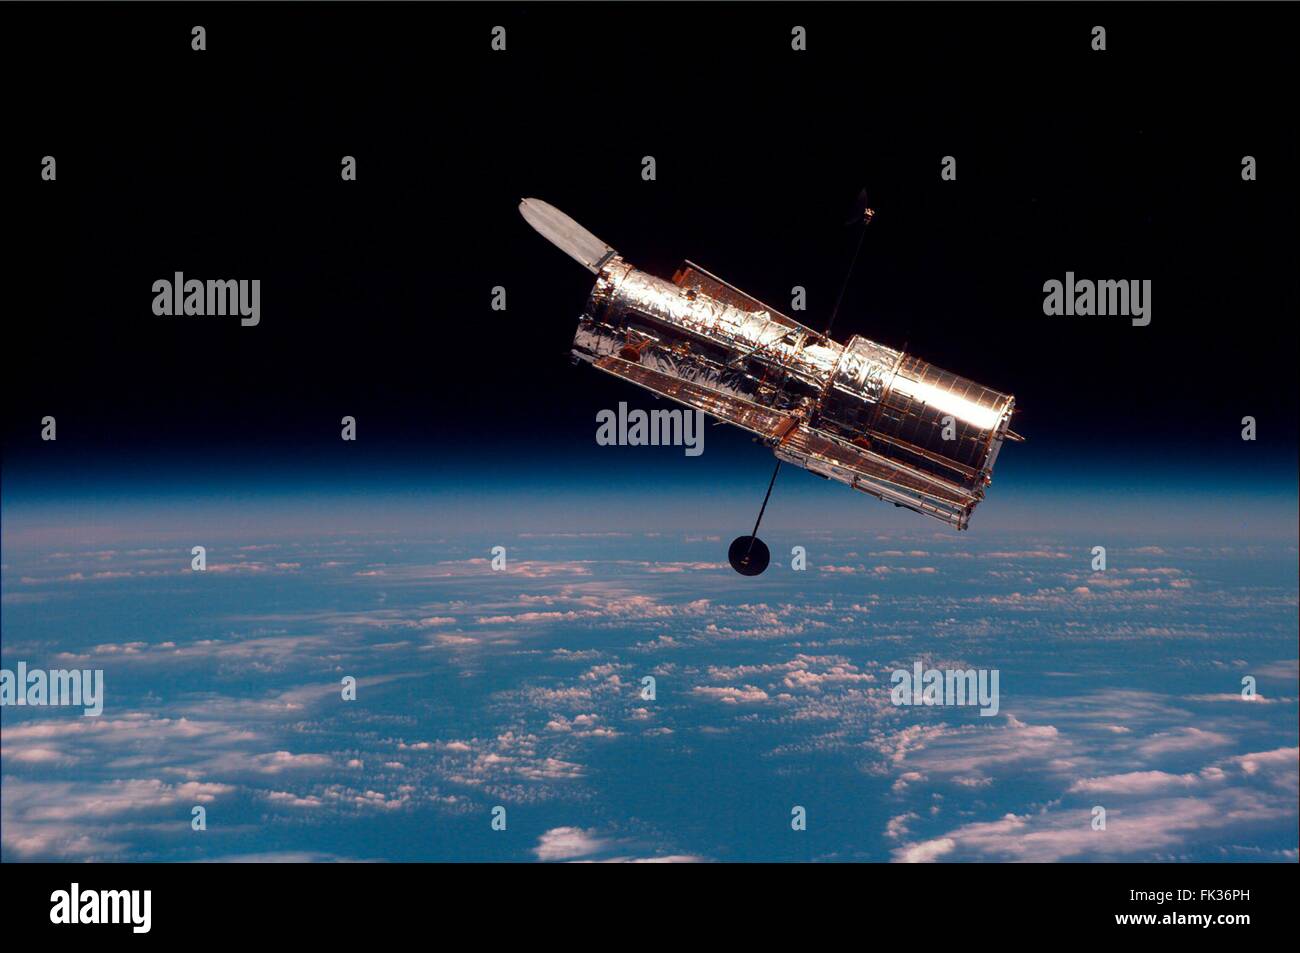 Le Télescope Spatial Hubble flotte au-dessus de la terre après avoir été libéré par la navette spatiale à la suite du bras de rtobotic les réparations et améliorations par le STS-081 le 19 février 1997, les astronautes en orbite terrestre. Banque D'Images